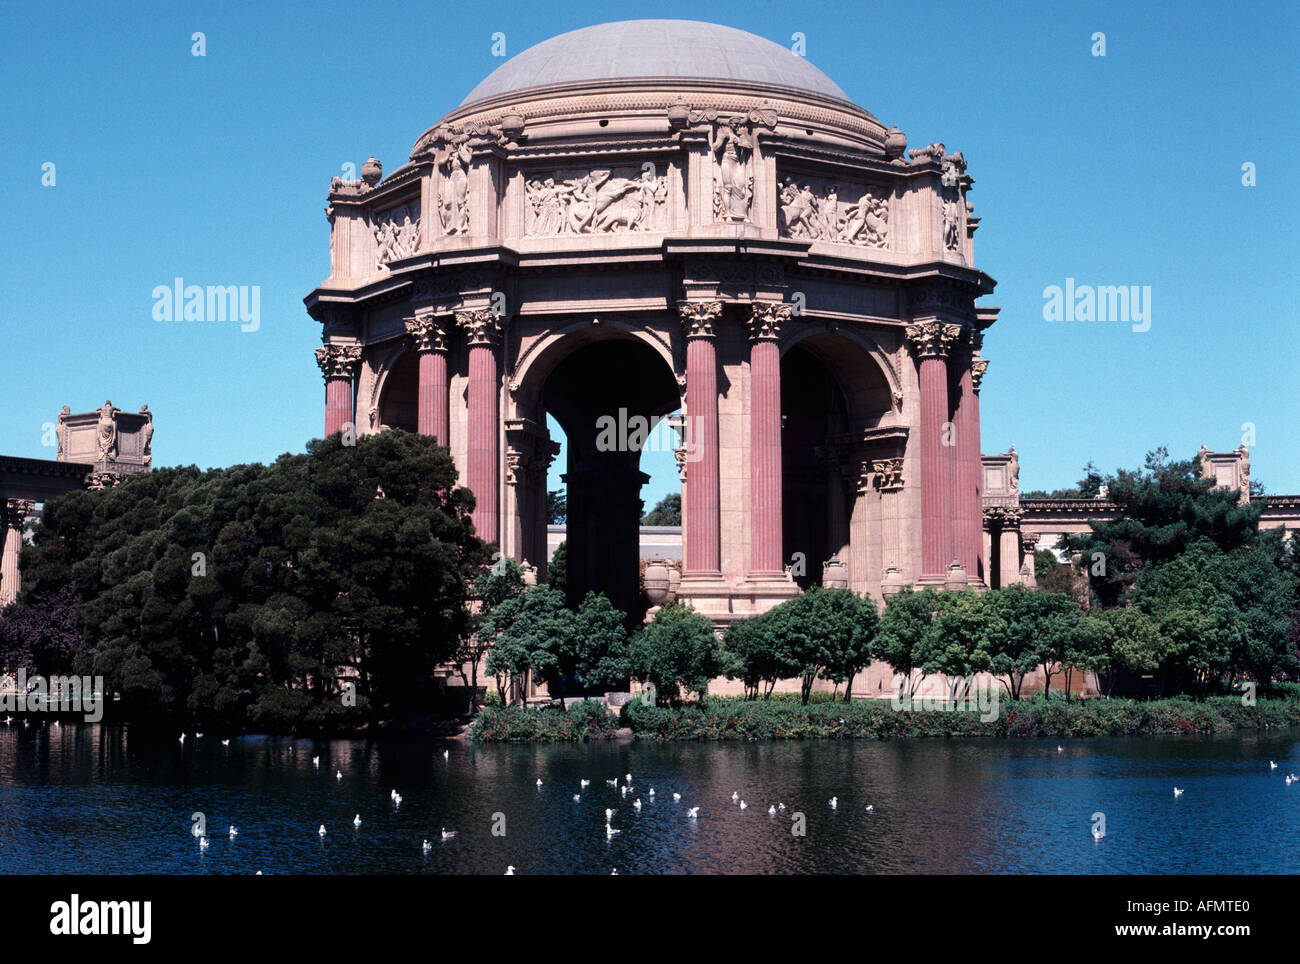 7141-Palast der schönen Künste San Francisco Kalifornien USA-Architektur Stockfoto